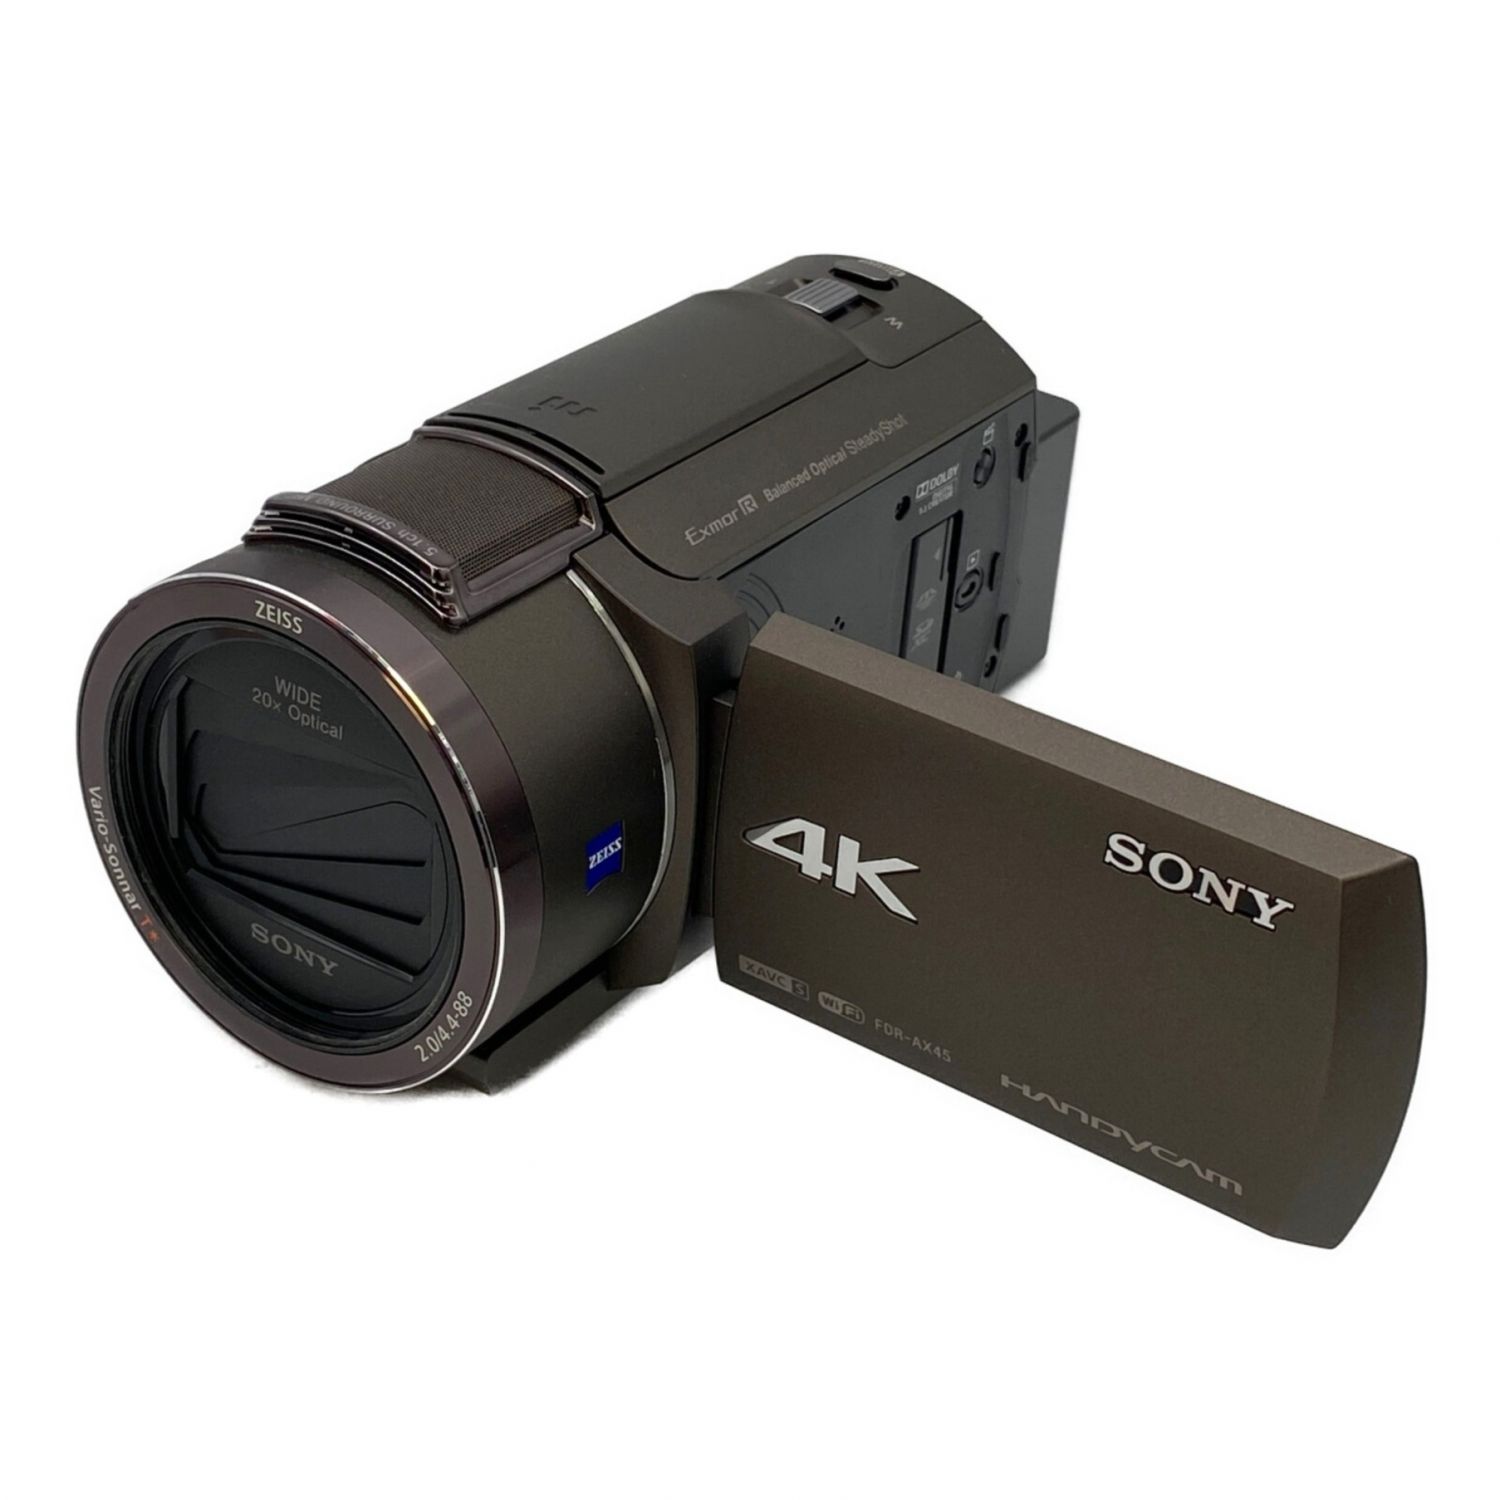 ソニー SONY ビデオカメラ FDR-AX45 4K 64GB 光学20倍 ブラック Handycam FDR-AX45 BC z2zed1b